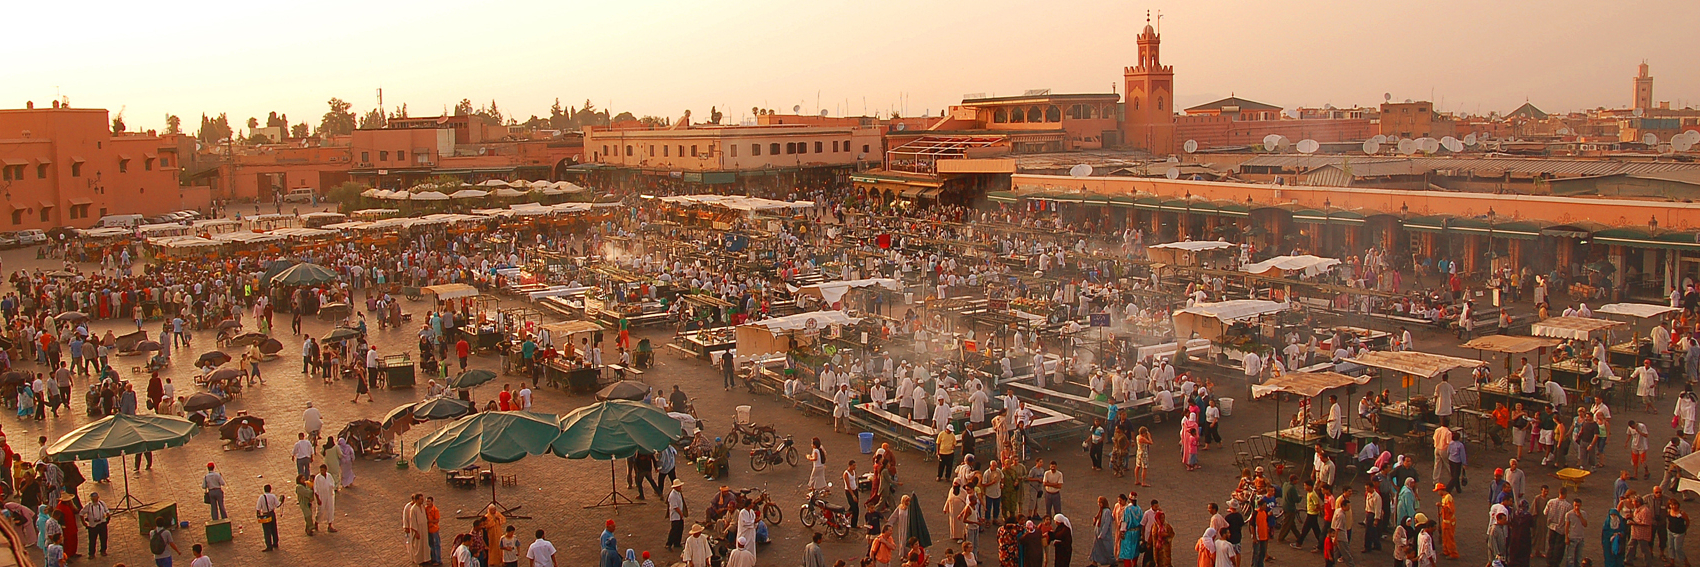 marrakech_market